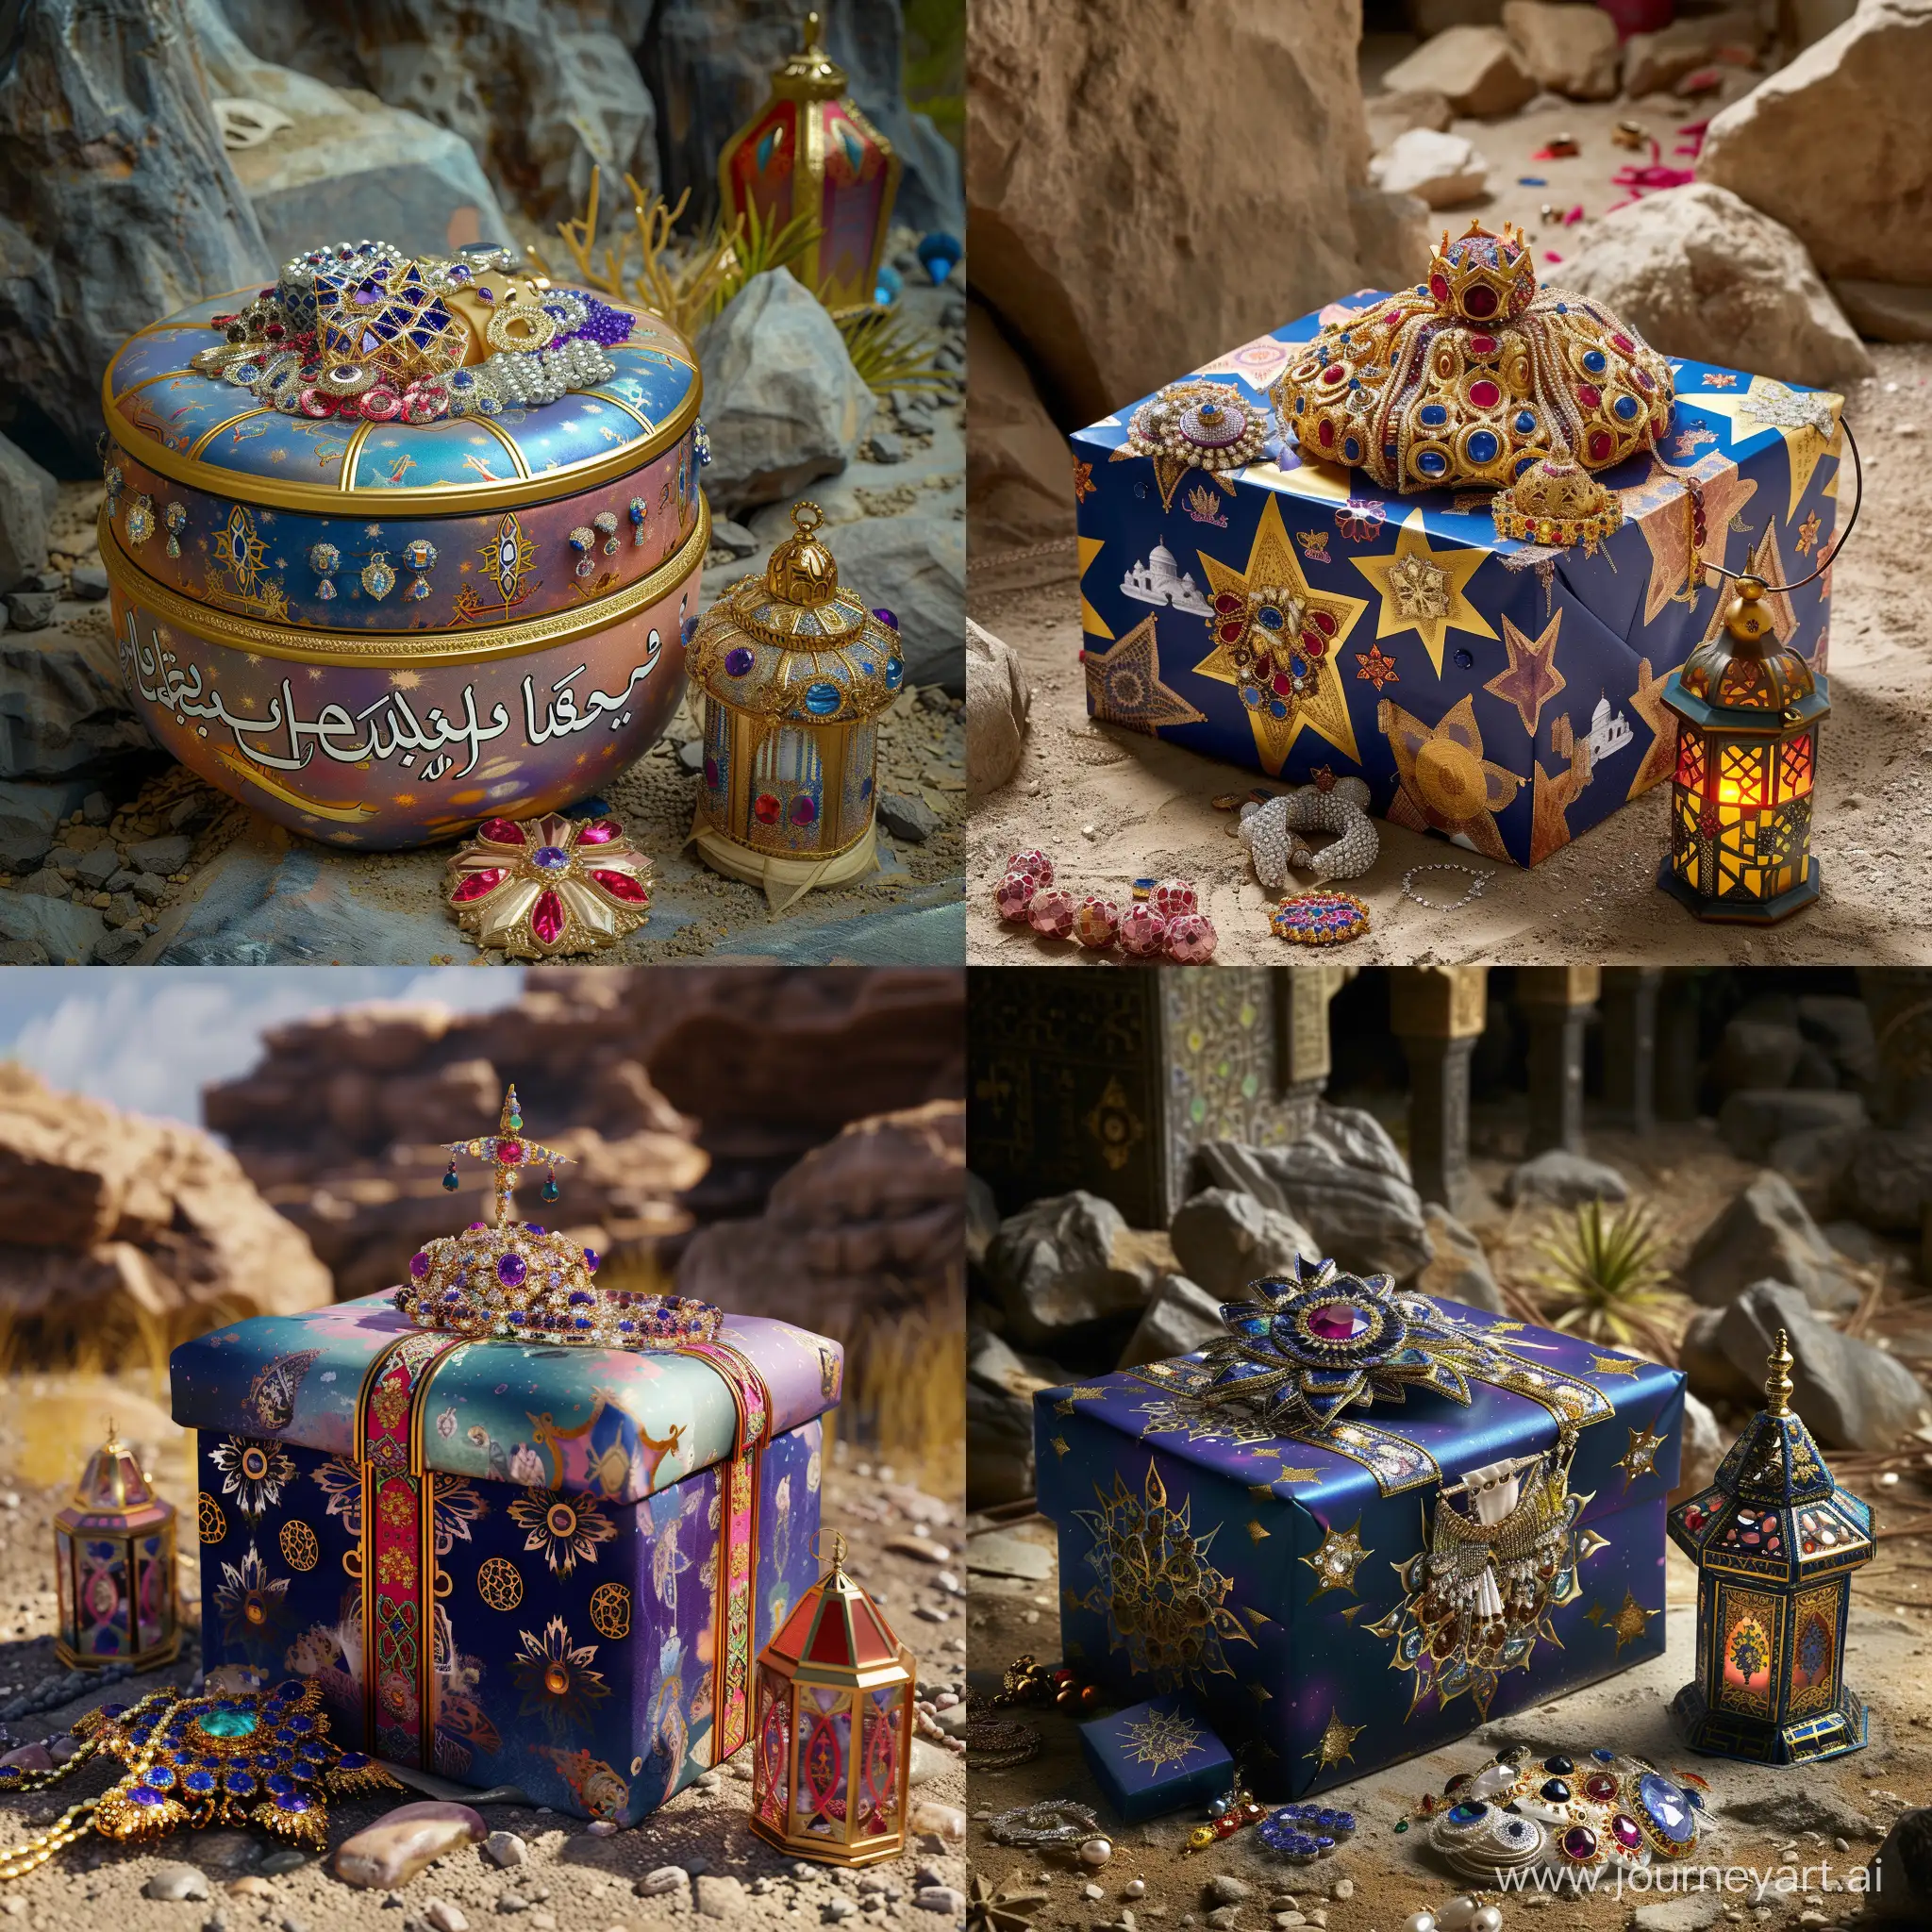 Elegant-Ramadan-Gift-with-Jewels-and-Lantern-in-a-Libyan-Setting